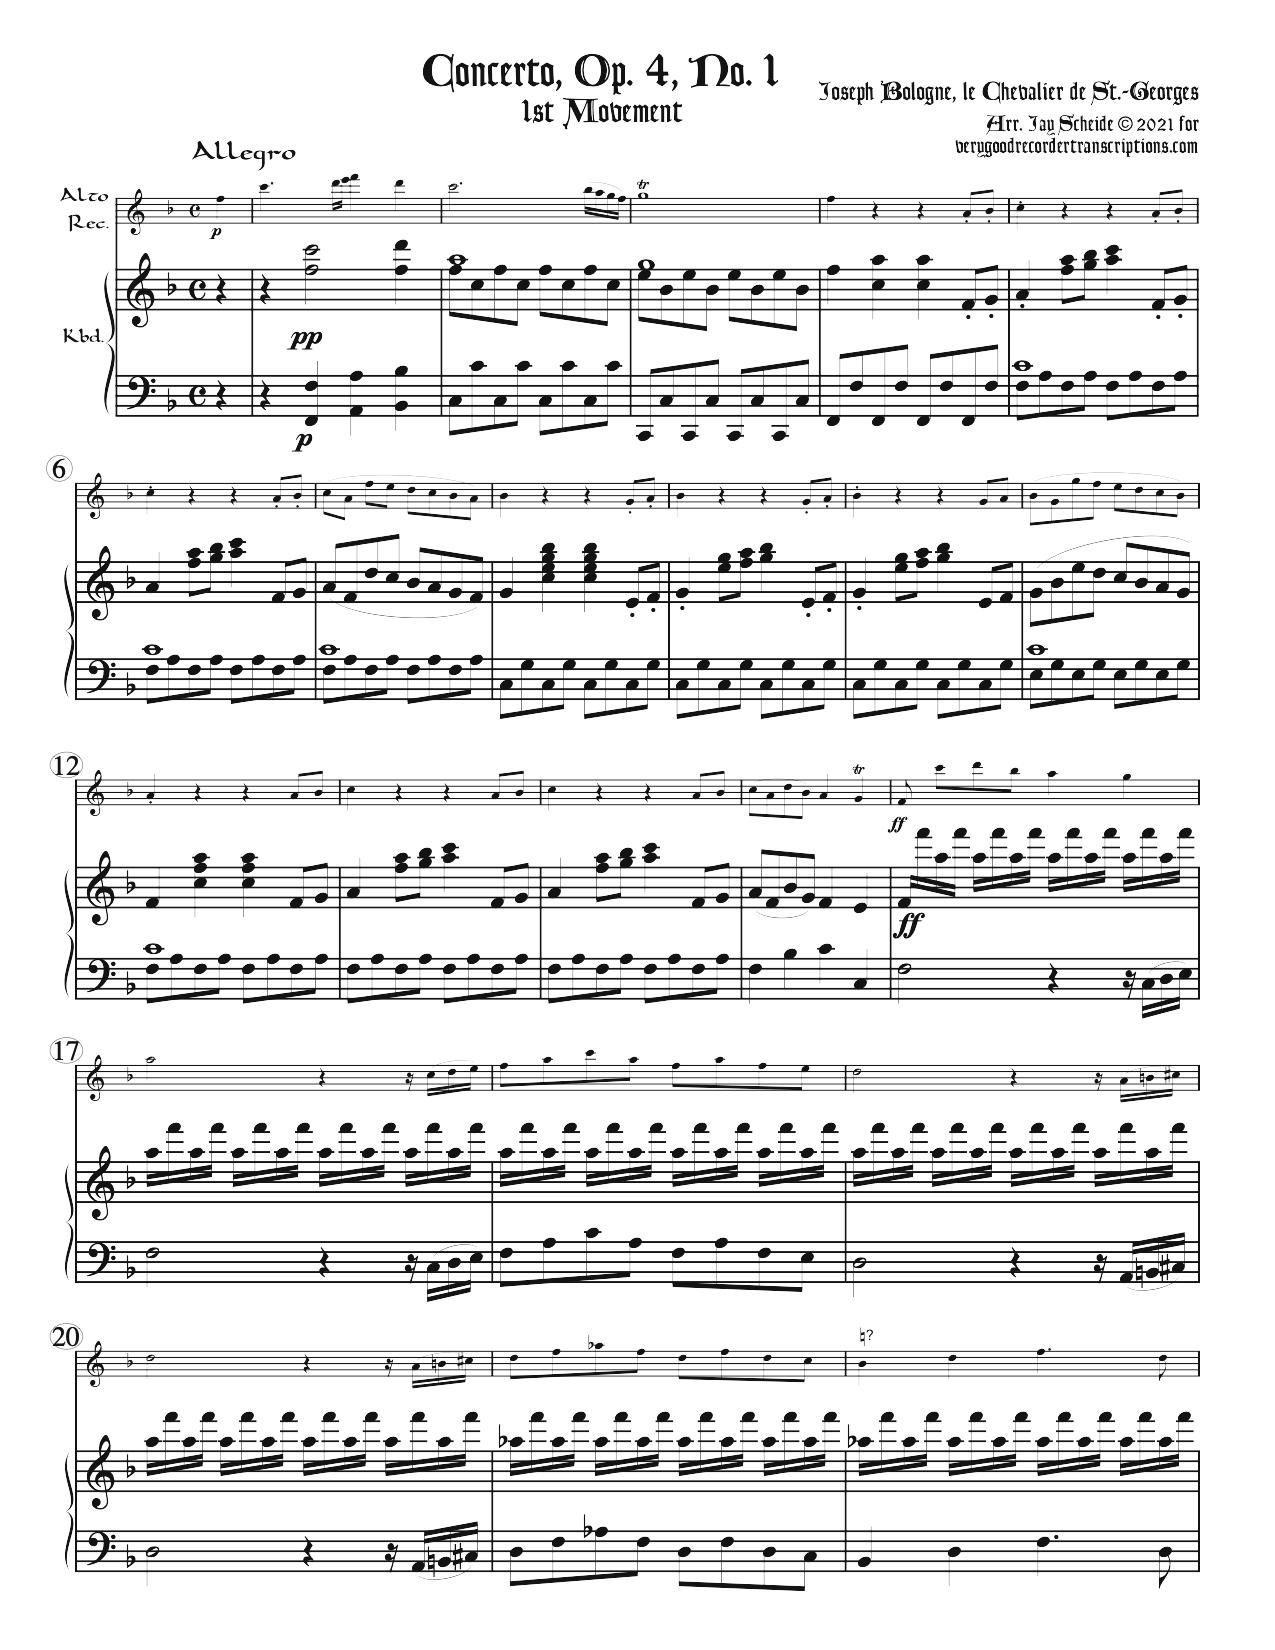 Seven Concertos, Op. 2, No. 1 & 2, Op. 4, No. 1 & 2; Op. 5, No. 1 & 2, and Op. 7, No. 1 & 2.